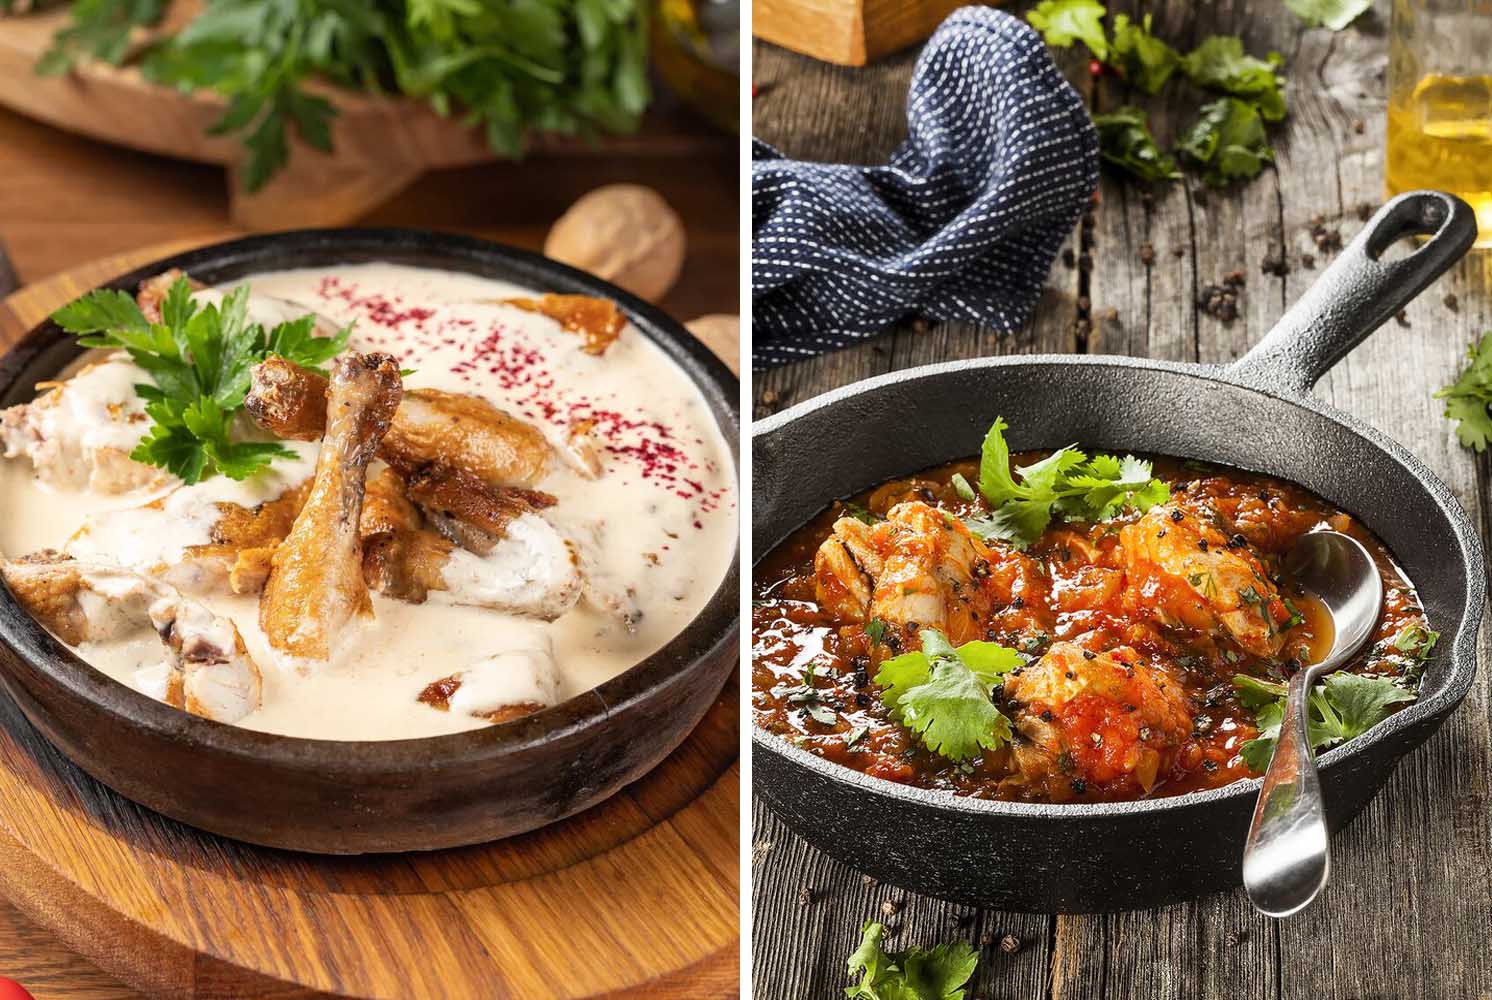 Чахохбили из курицы по-грузински: как вкусно приготовить грузинское блюдо в домашних условиях